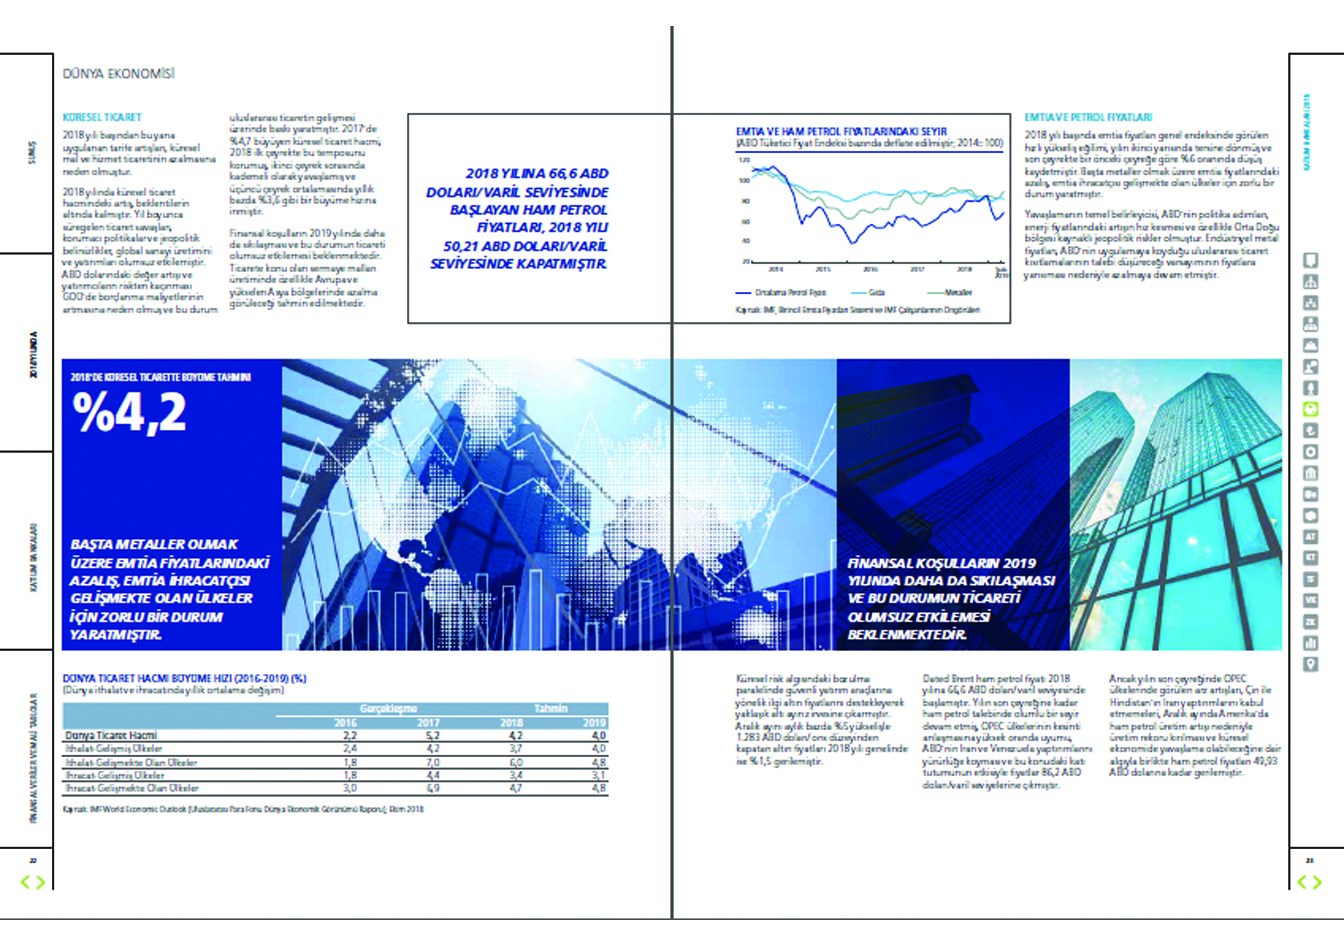 TÜRKİYE KATILIM BANKALARI BİRLİĞİ / 2018 Faaliyet Raporu / 2018 Annual Report